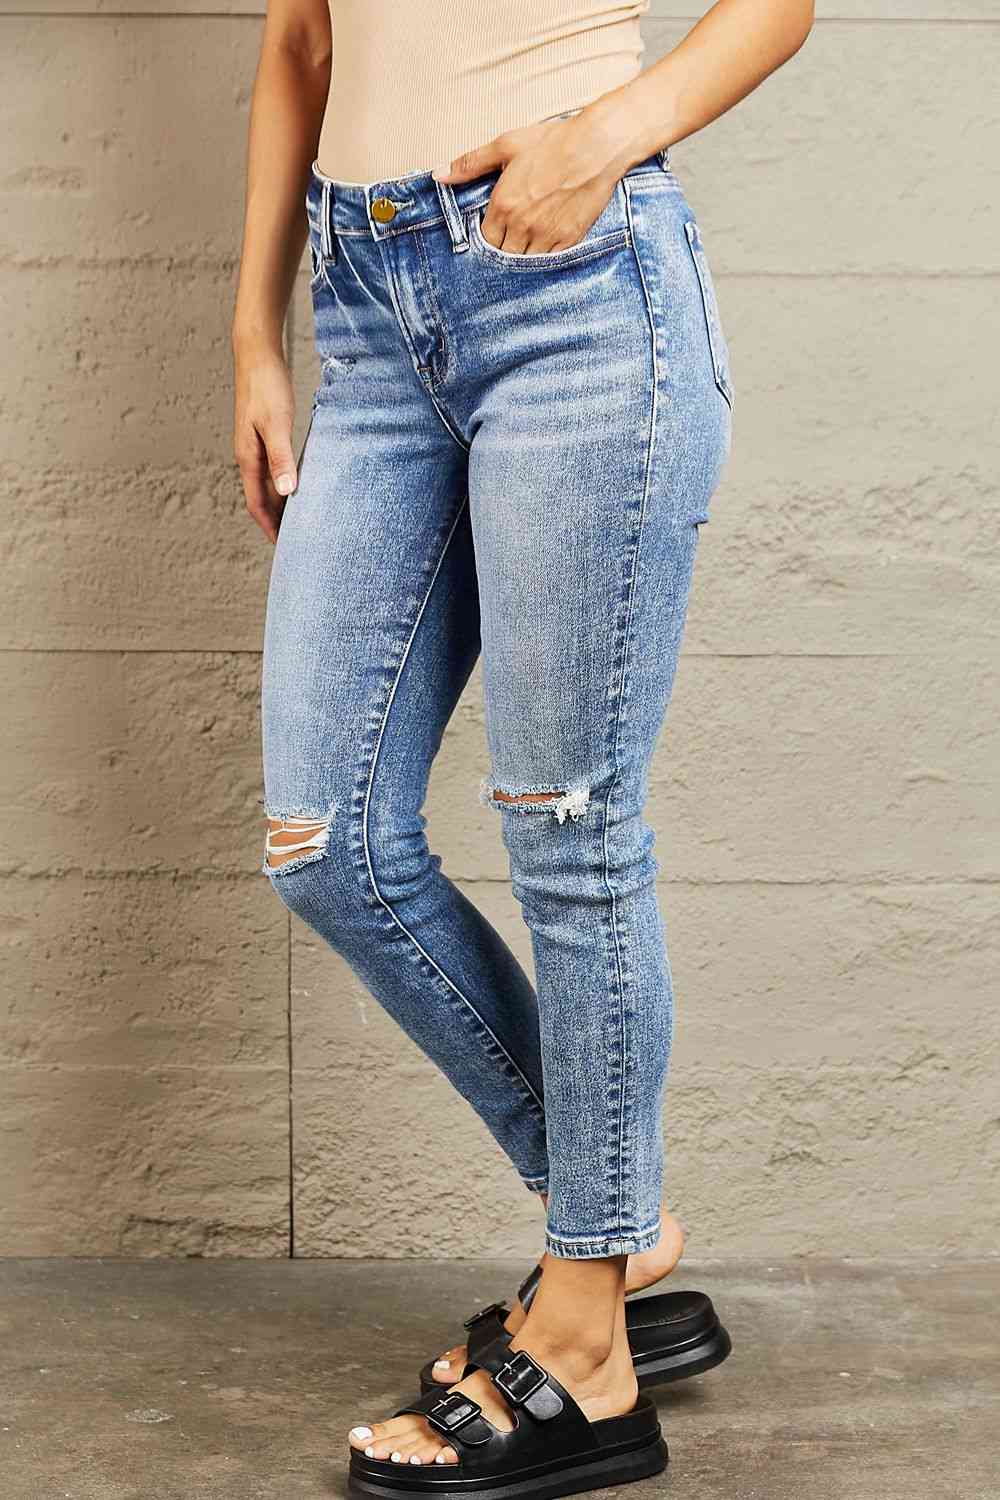 BAYEAS Mid Rise Distressed Skinny Jeans - Pahabu